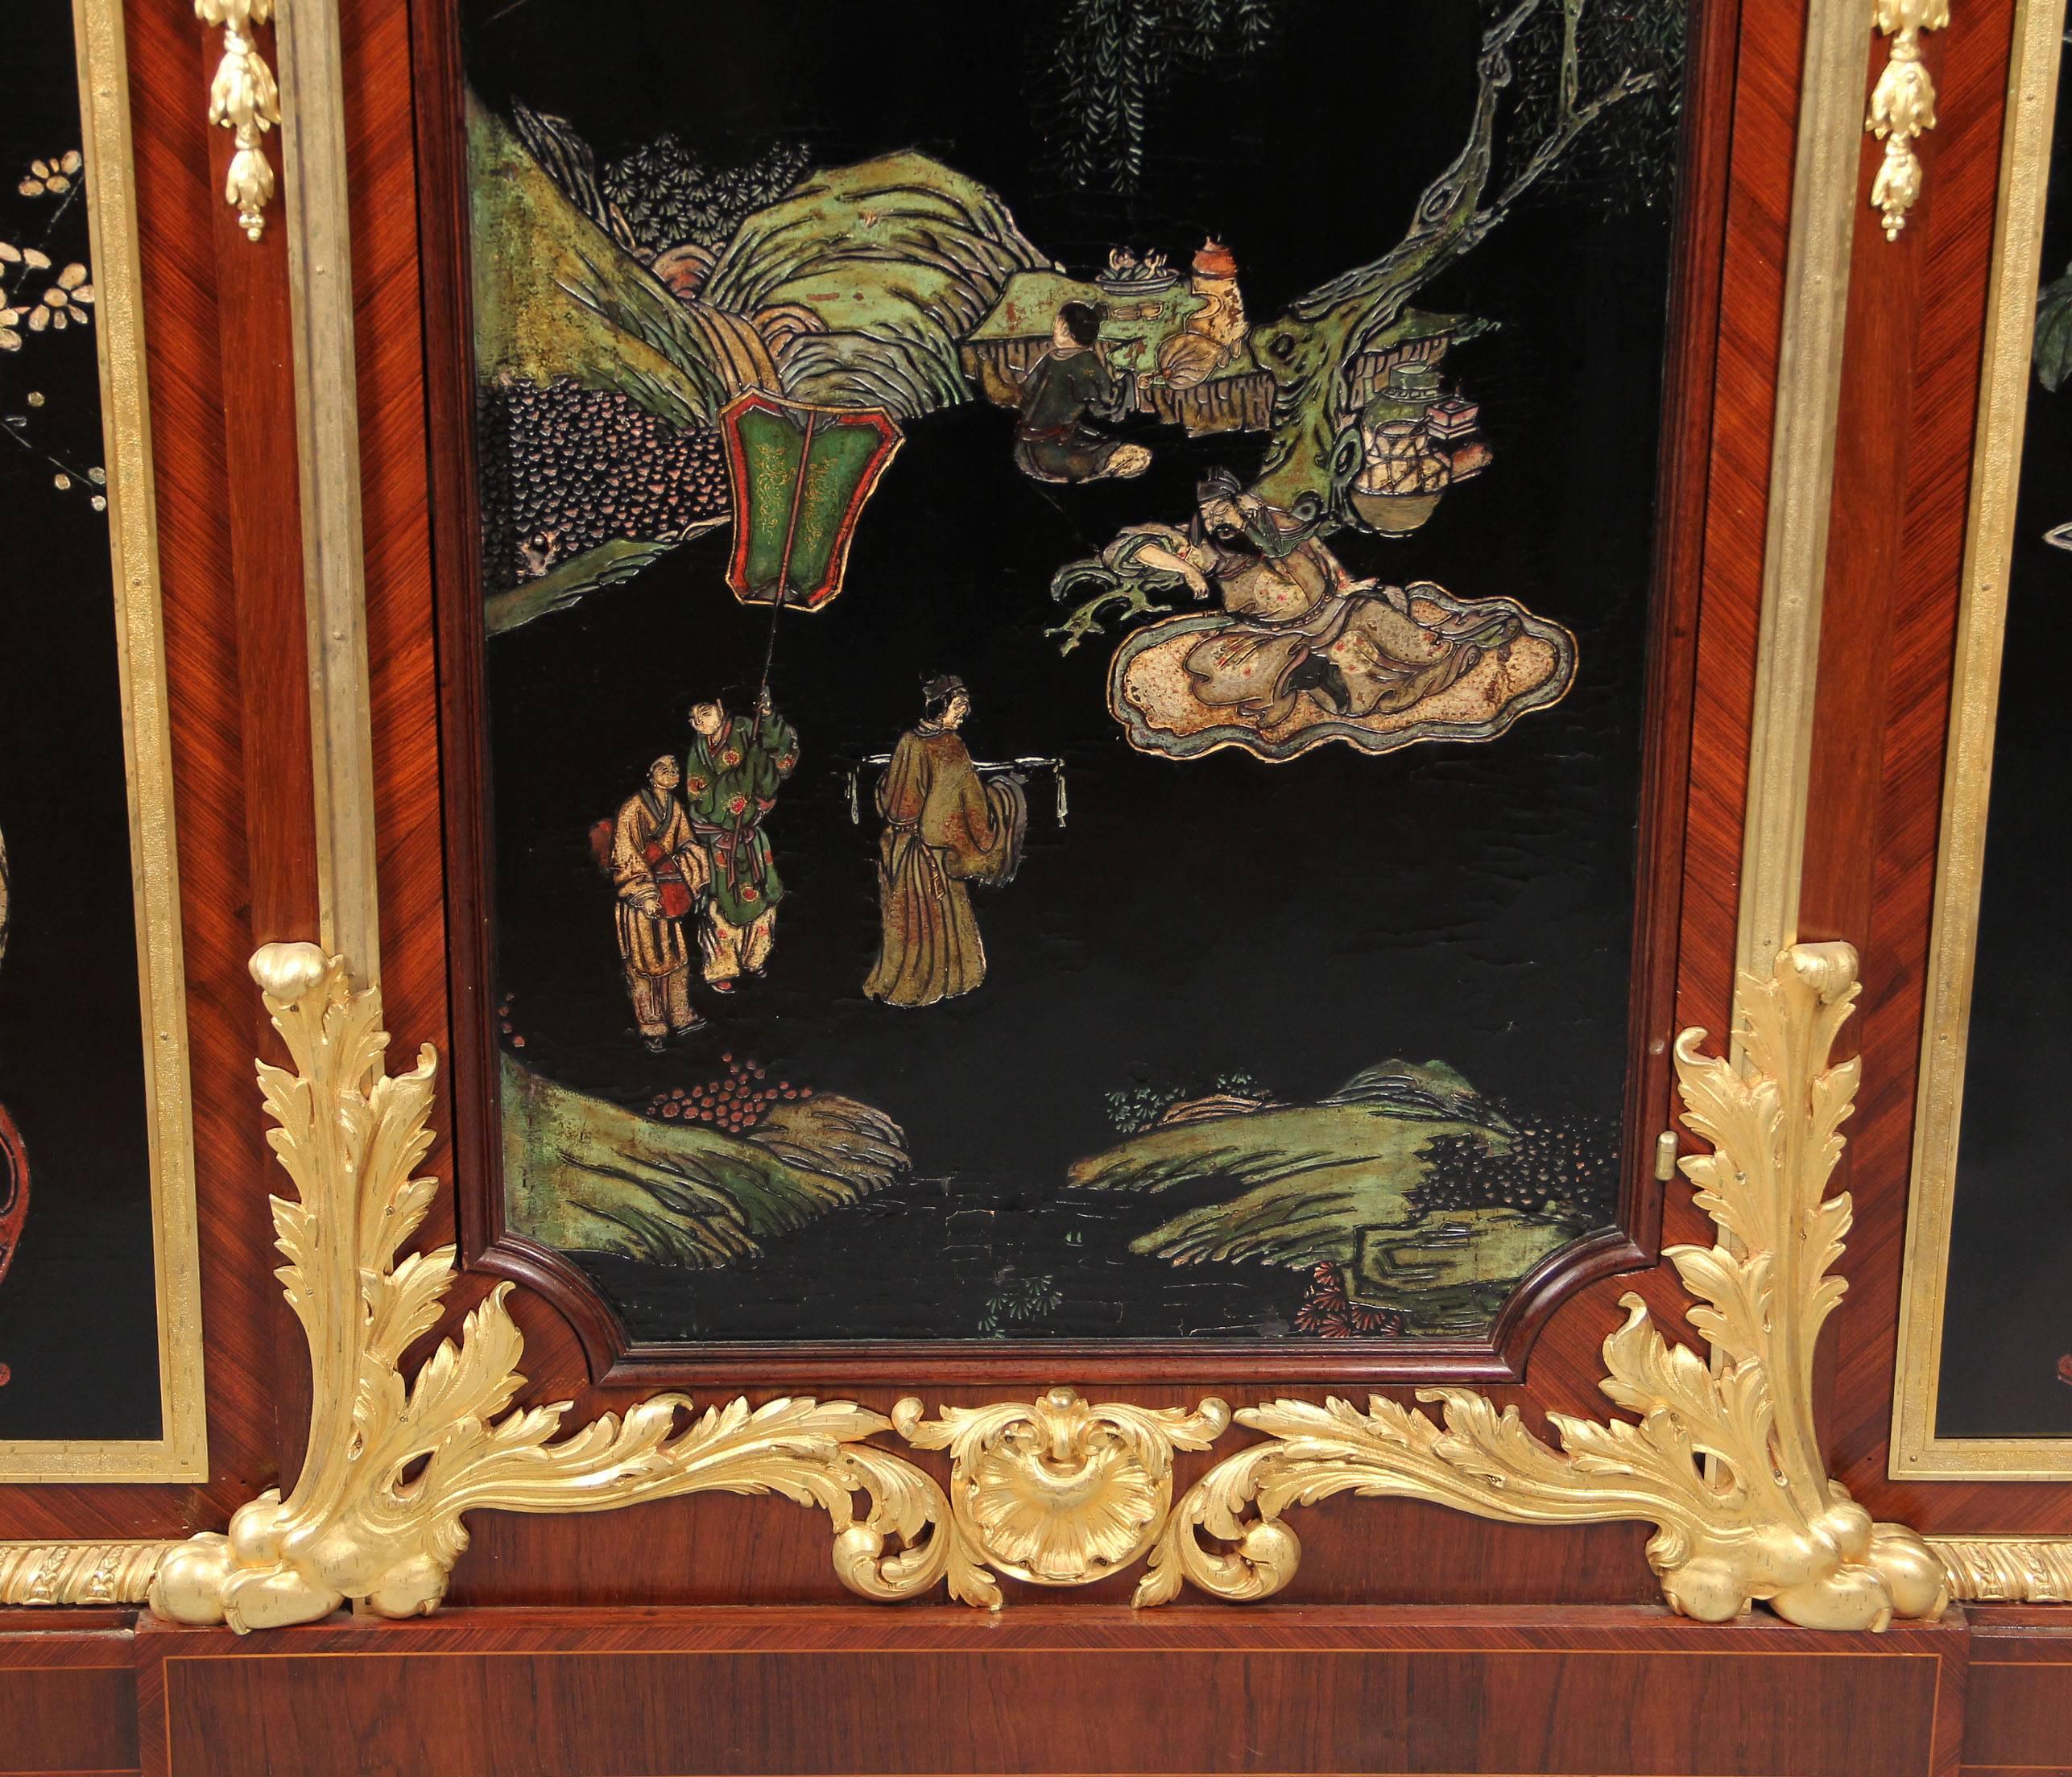 Schöner vergoldeter Bronzeschrank aus dem späten 19. Jahrhundert im Louis-XVI-Stil mit Coromandel-Lackierung

Von Maison Forest.

Marmorplatte über einer bronzenen Schublade, Schrank mit drei lackierten Coromandel-Szenen, die mittlere Tür lässt